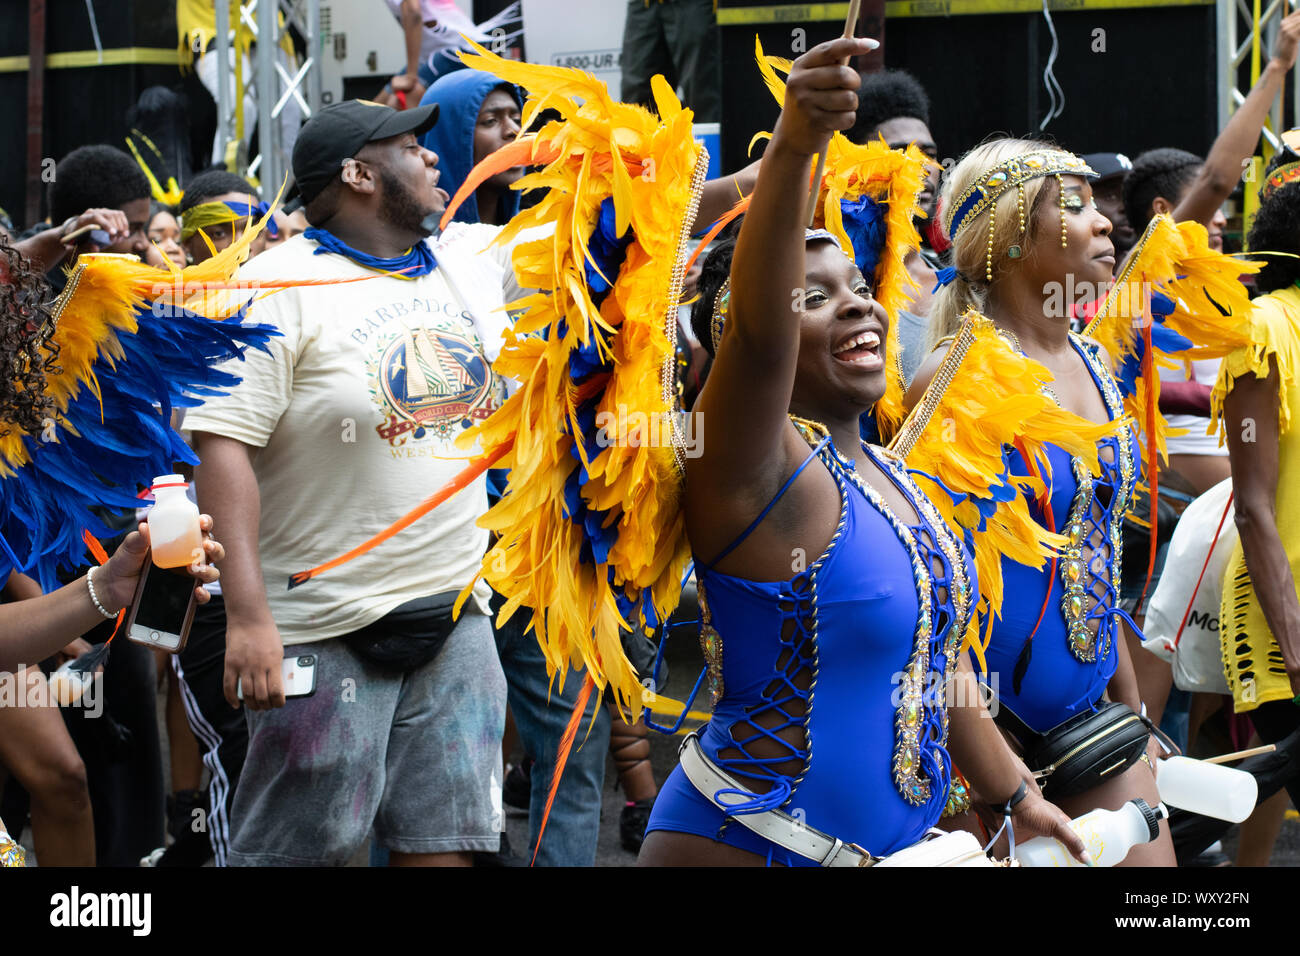 Tanzend zu lauter Musik laufen Teilnehmer der West Indian Day Parade di New York City Un den Zuschauern vorbei und animieren diese. Foto Stock